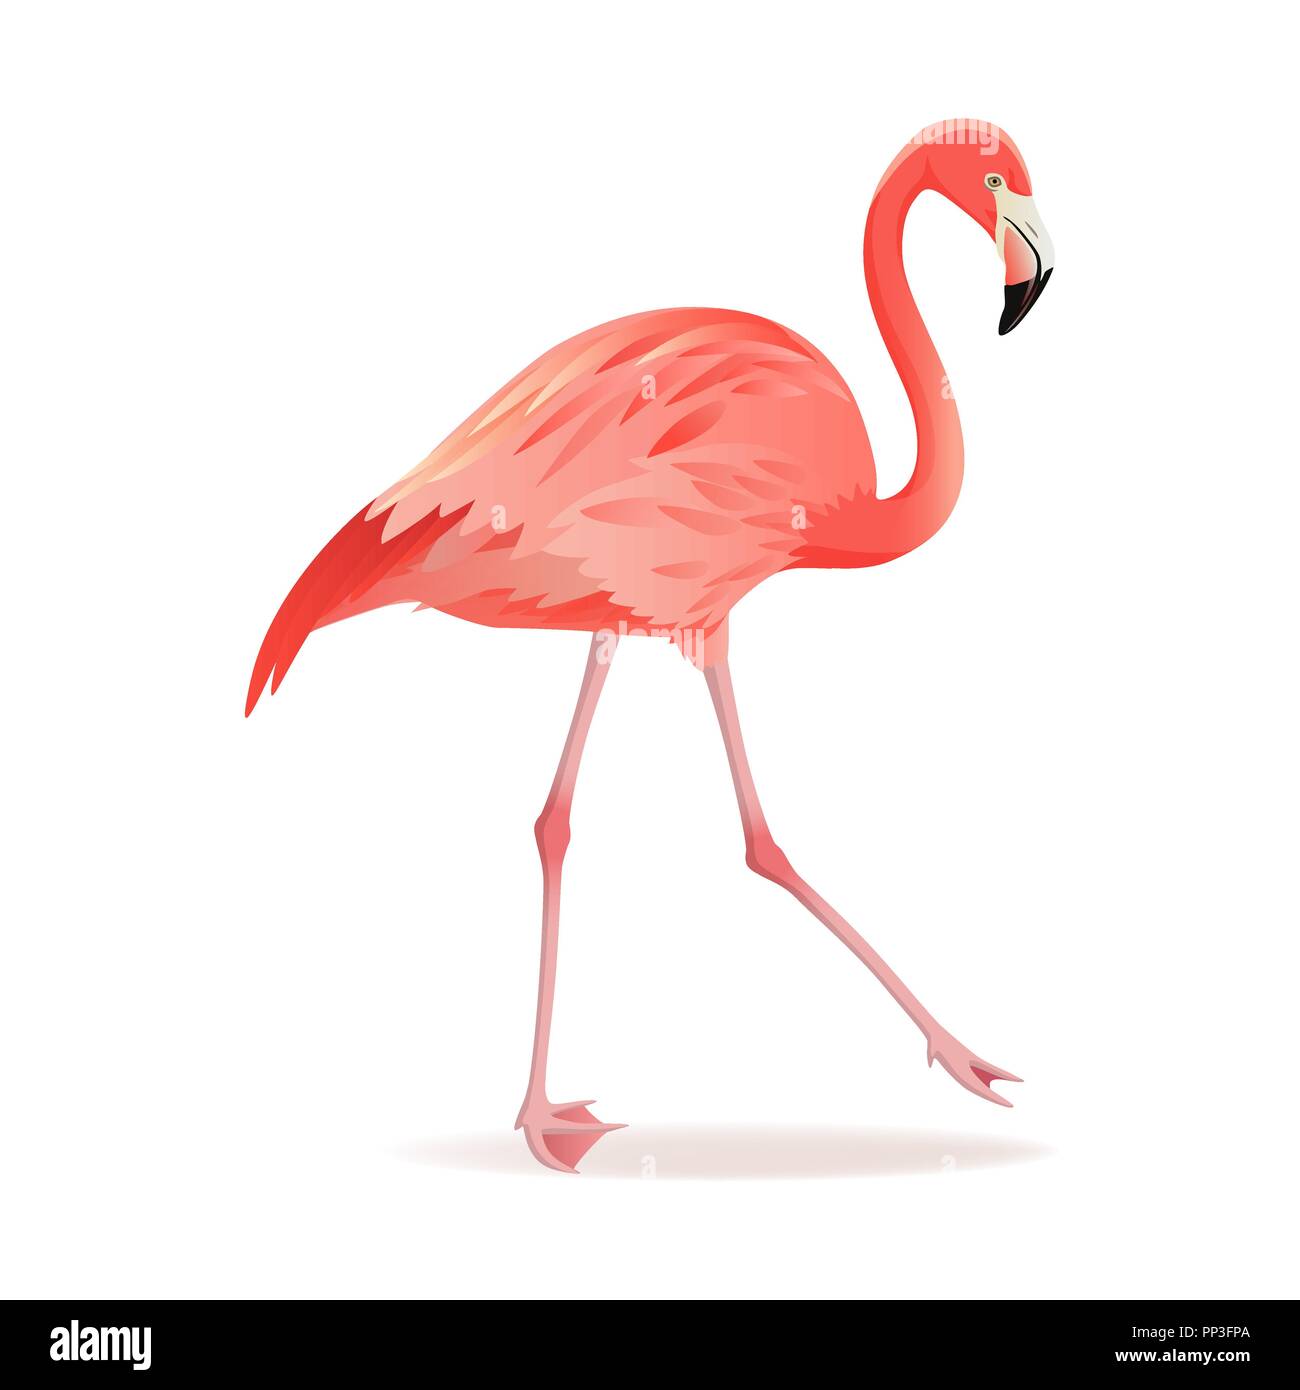 Rot und rosa Flamingo Vector Illustration. Exotischen Vogel wandern dekorative Gestaltungselemente Sammlung. Flamingo isoliert auf weißem Hintergrund Stock Vektor